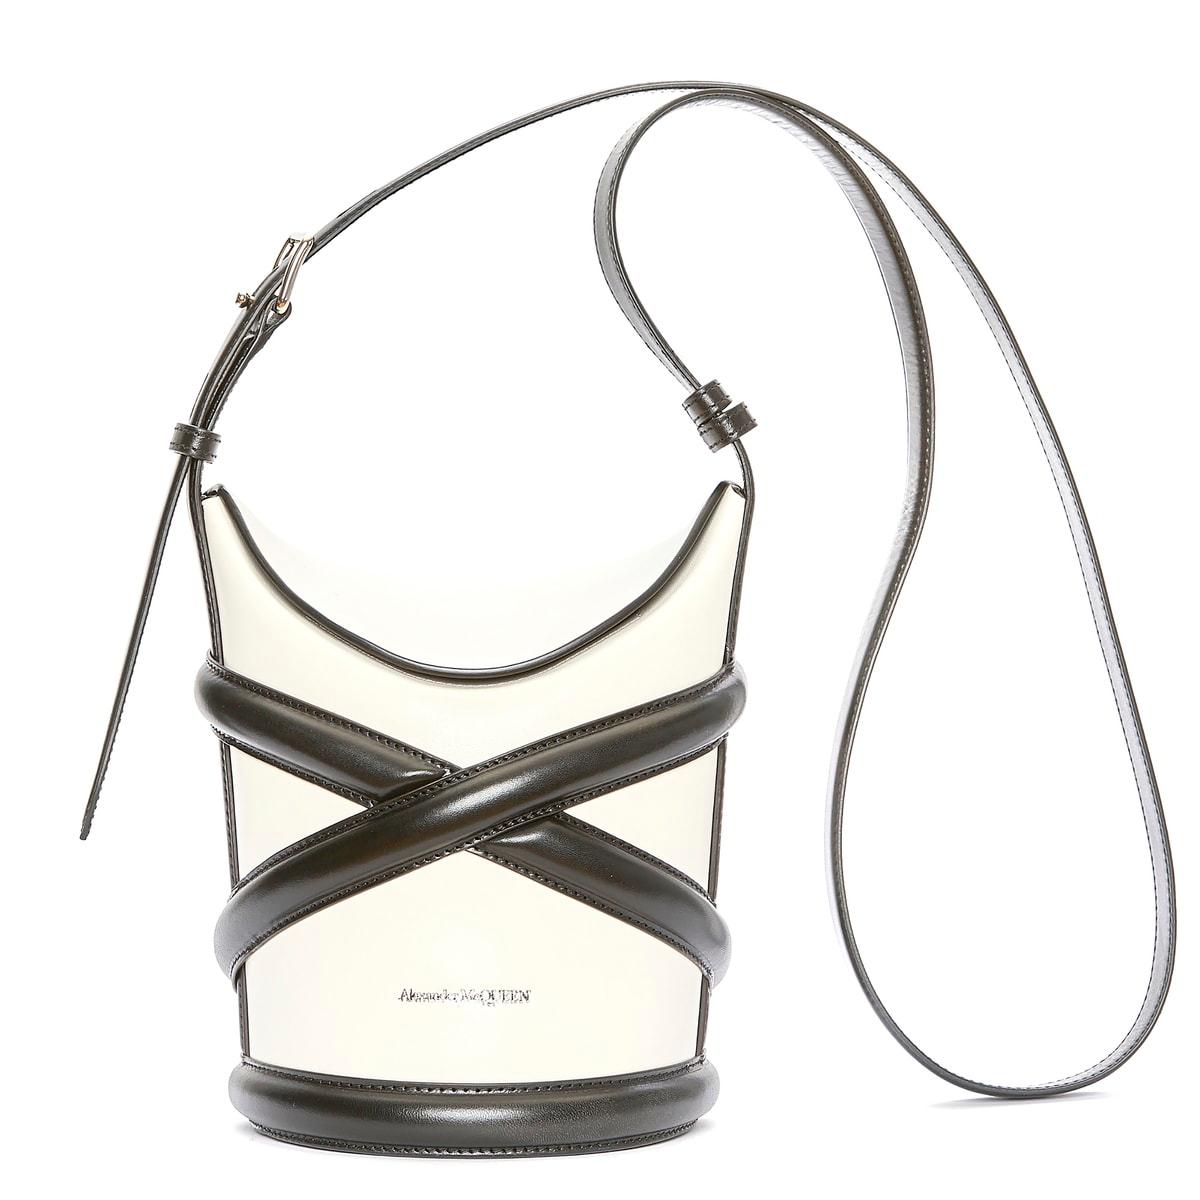 〈アレキサンダー・マックイーン〉のハーネスに着想を得た新作バッグ。豊富なカラー展開 - Slide:2